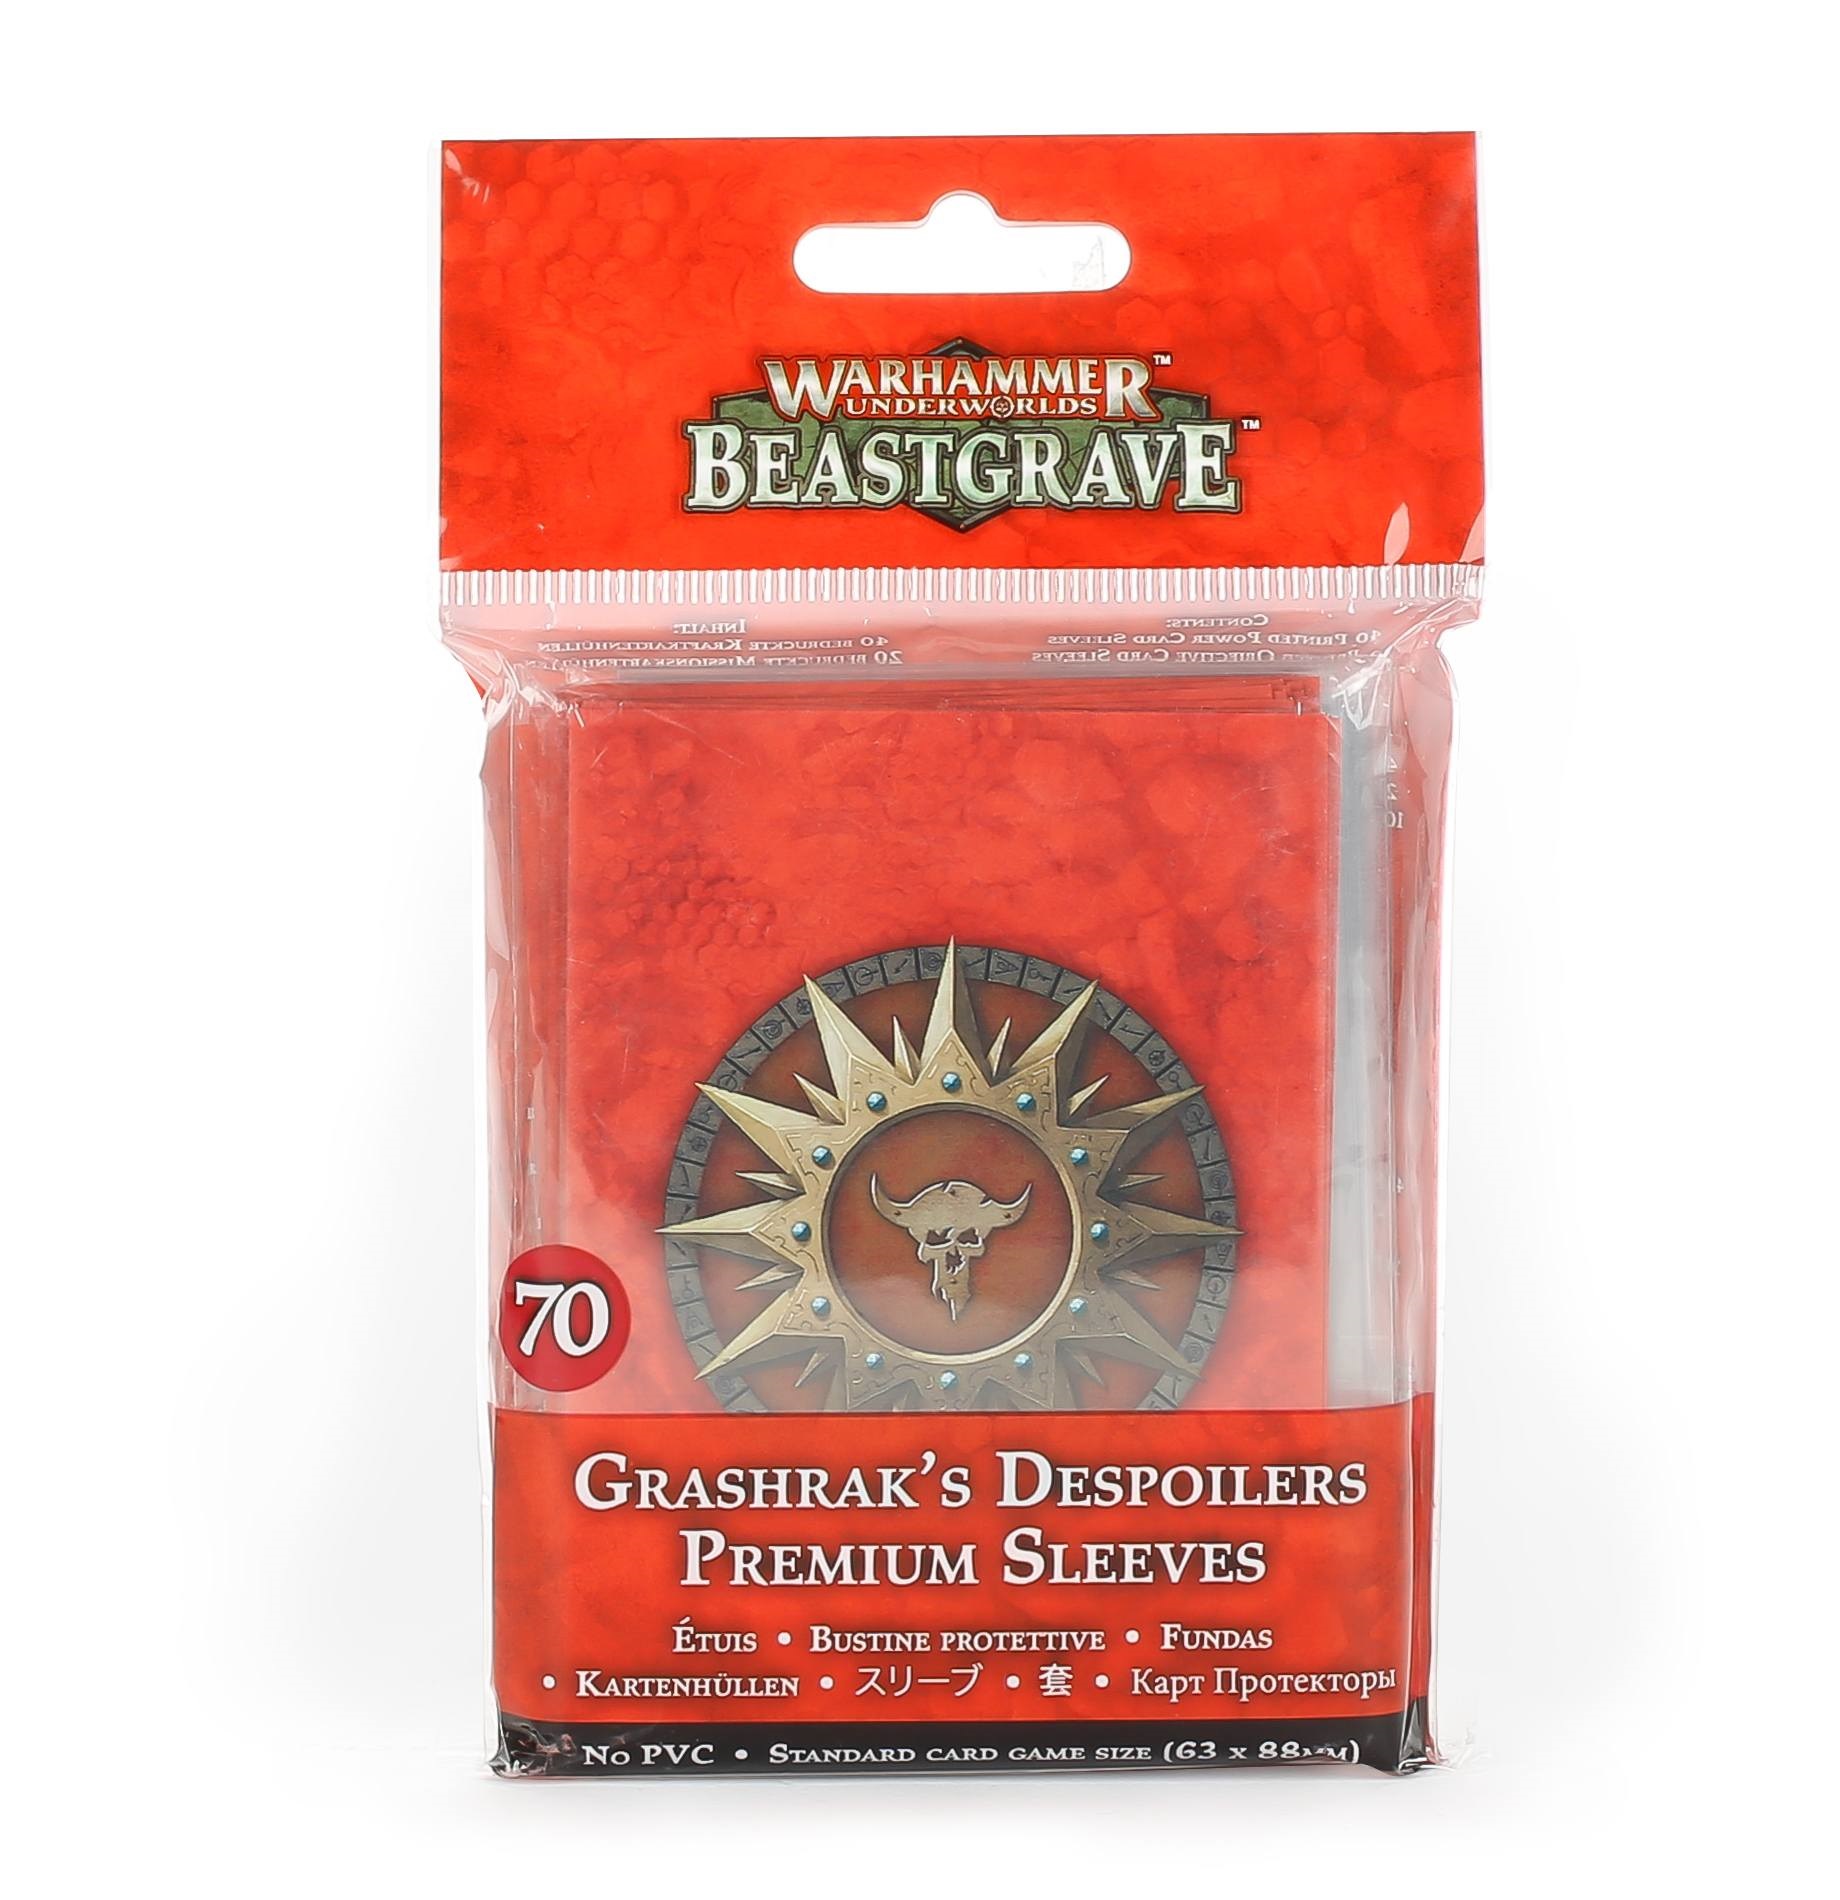 Grashraks Despoilers Sleeves Pack